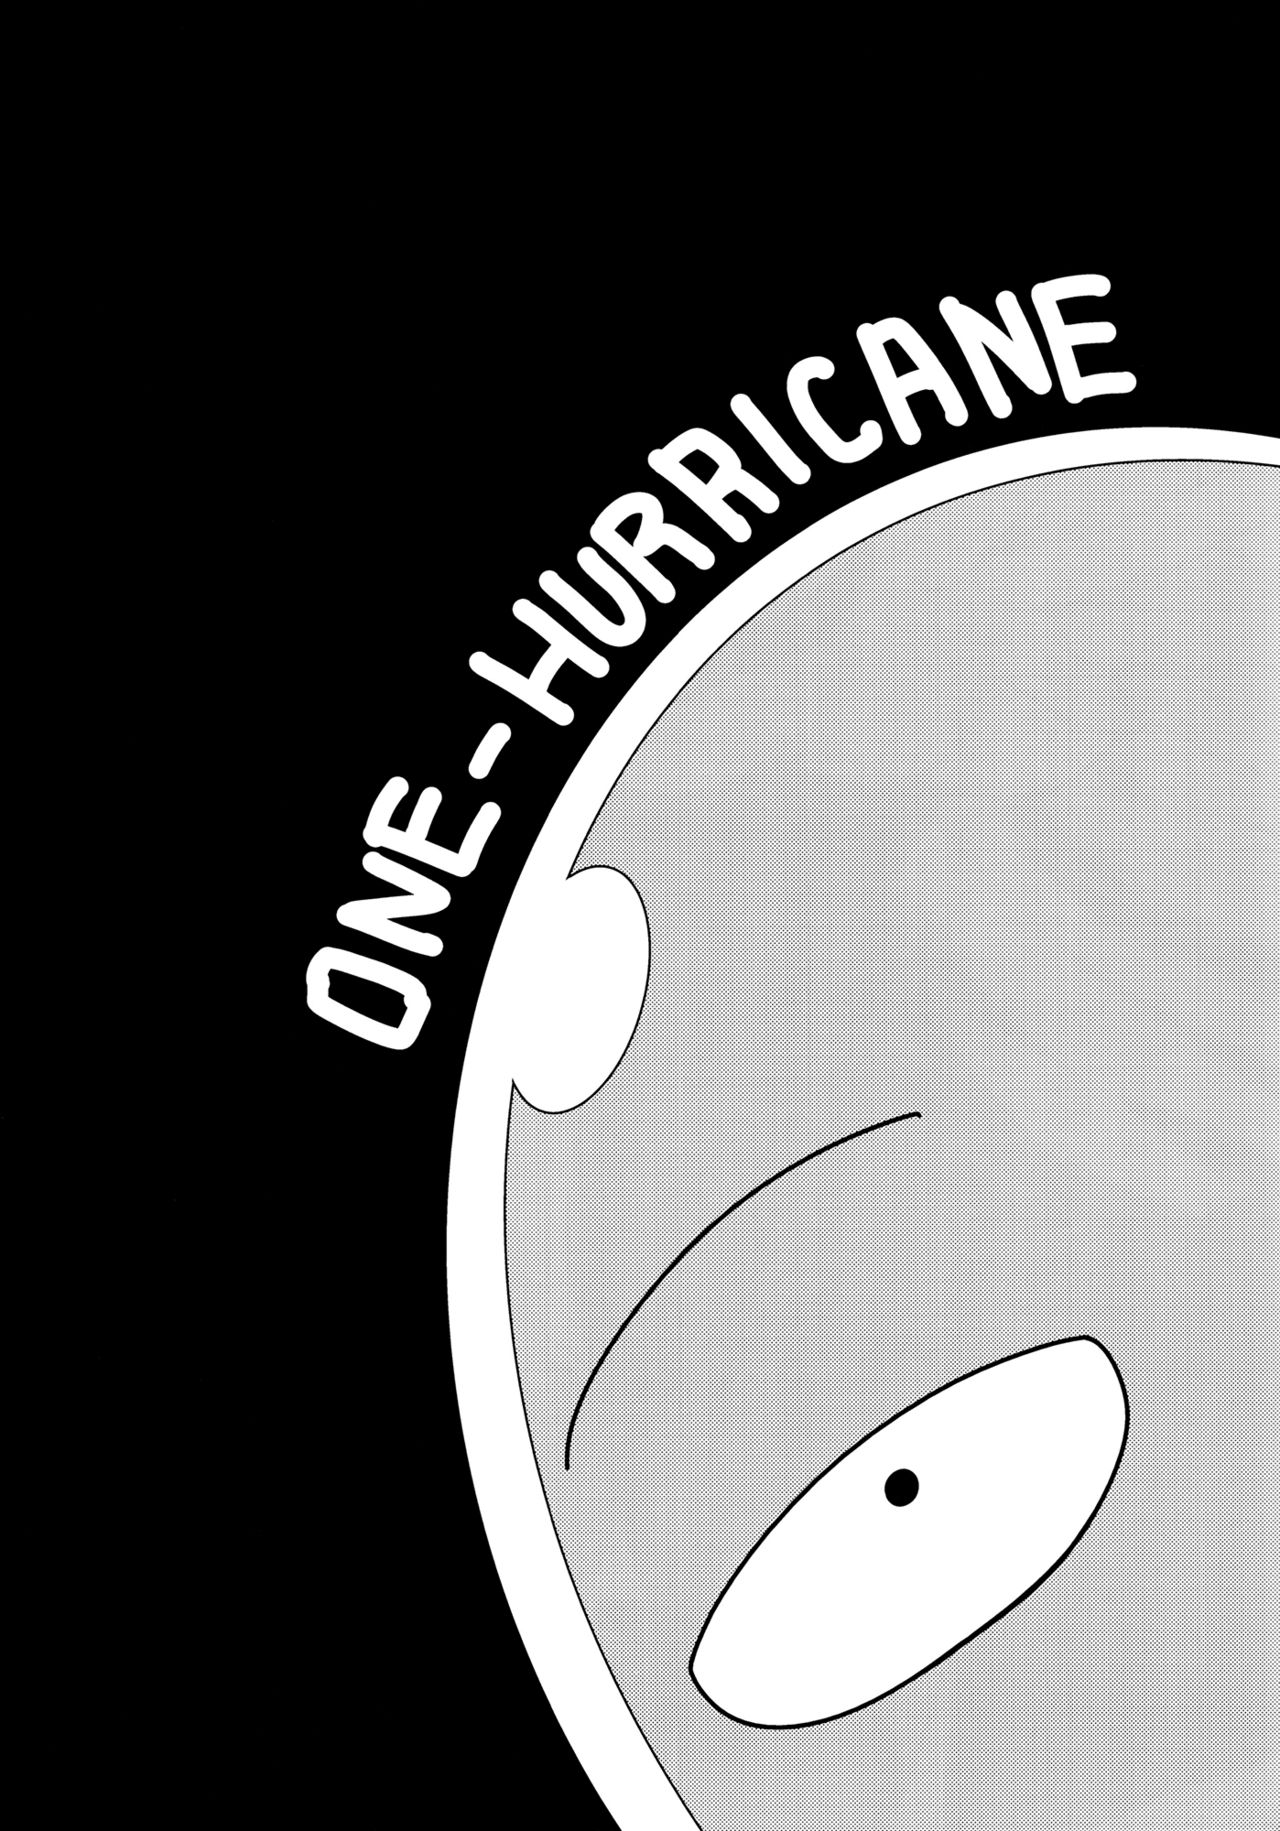 One Punch-Man - One-Hurricane (Doujinshi) - Page 2